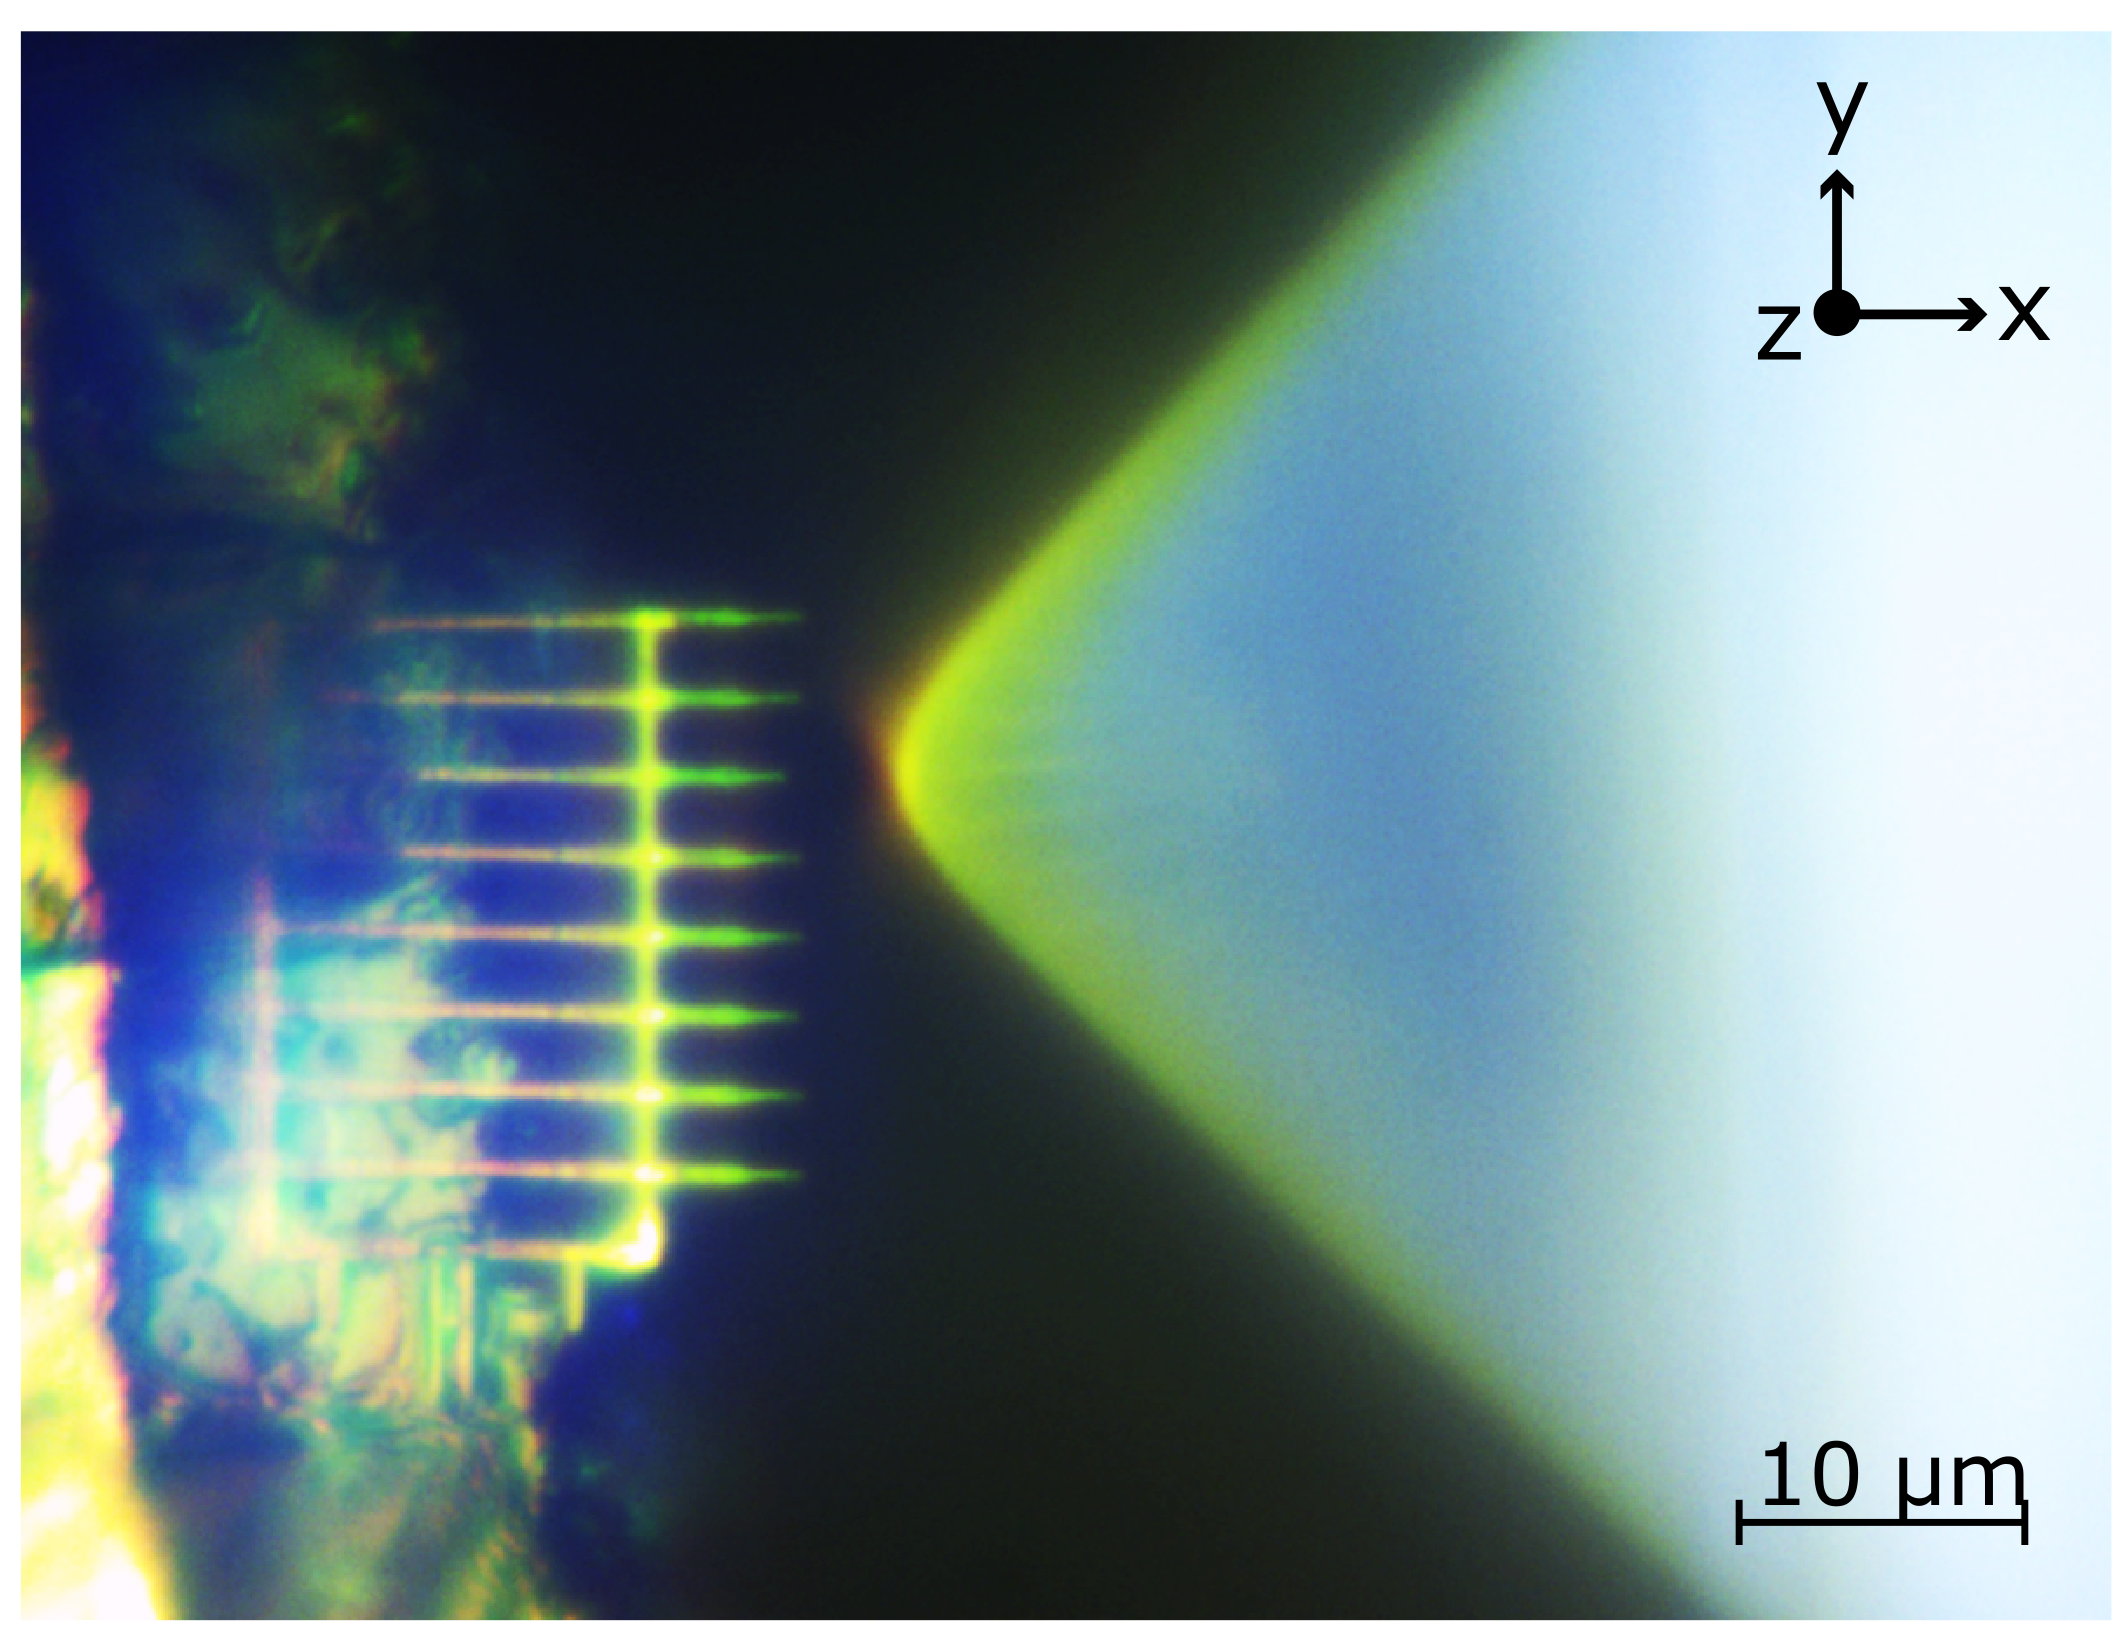 Lensed Fibre coupling to a diamond nanophotonic quantum waveguide chiplet 